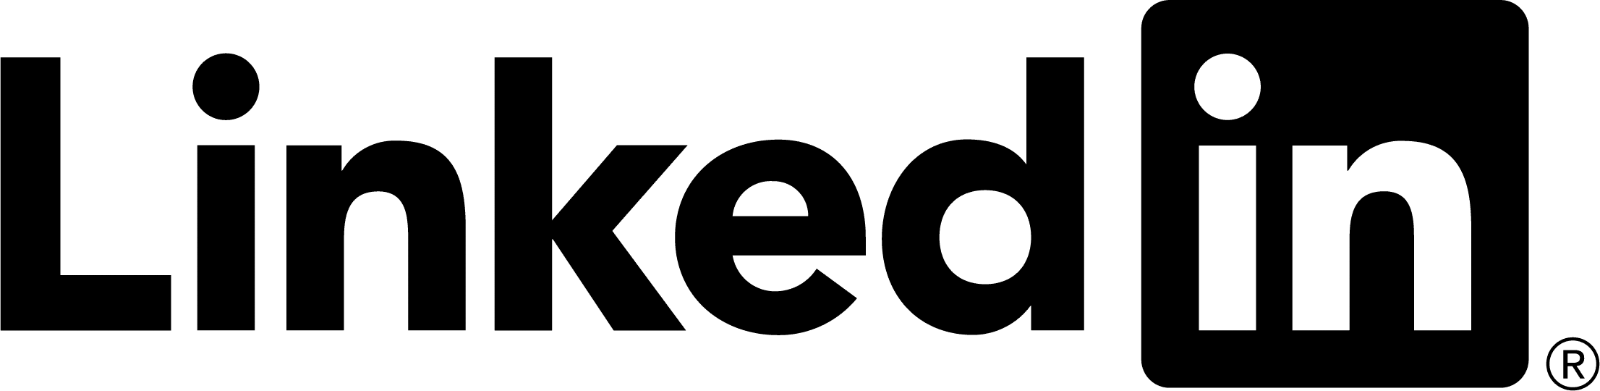 Black LinkedIn logo